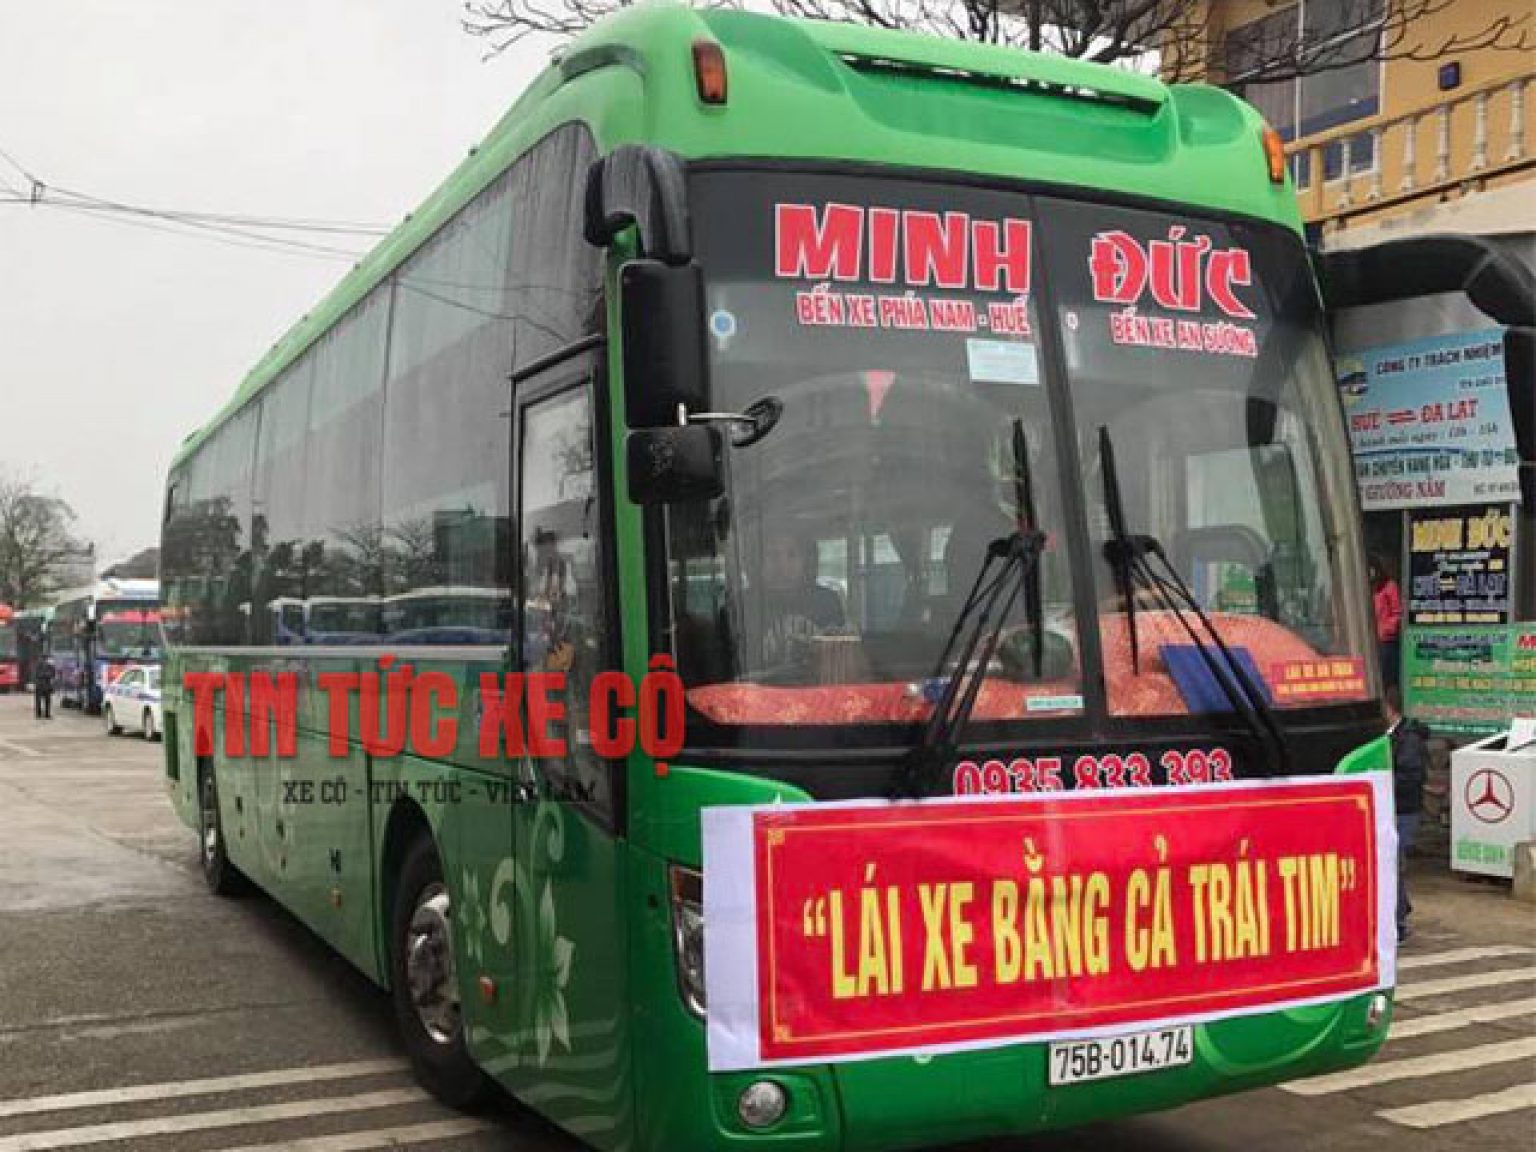 Danh sách xe khách tuyến Quảng Ninh đi Phú Thọ mới nhất - Megabus.vn ...